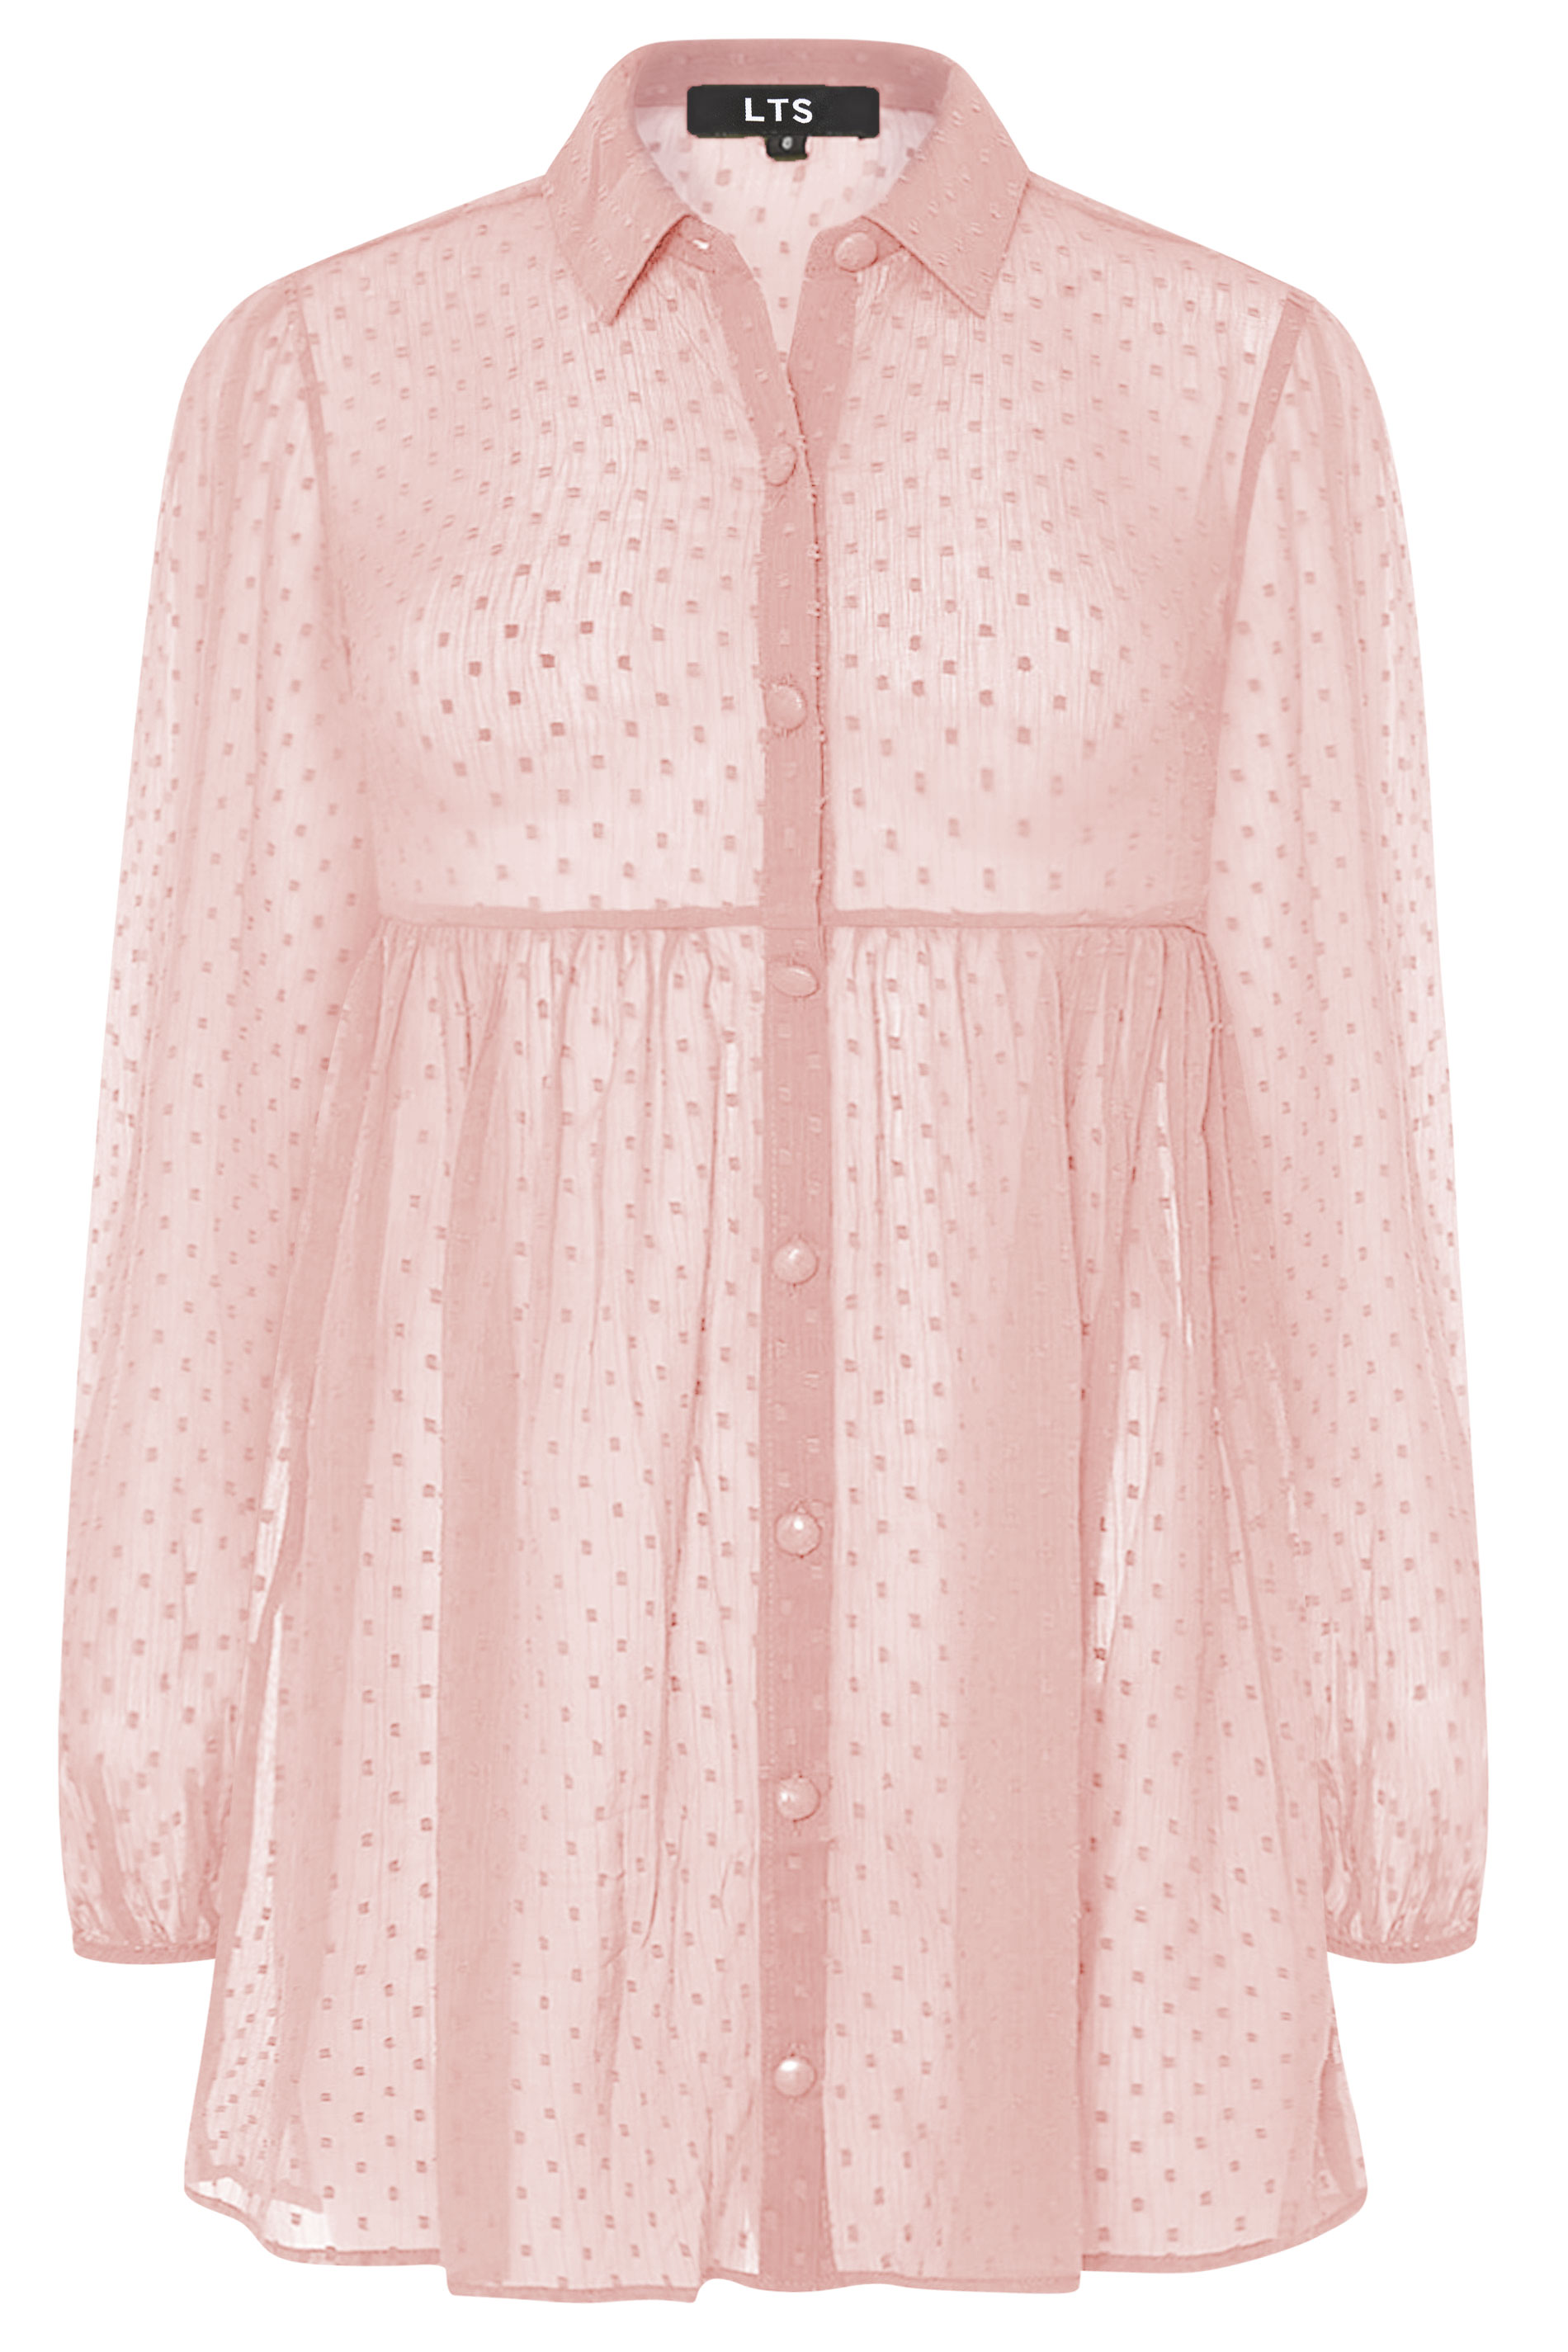 LTS Pink Peplum Dobby Chiffon Shirt | Long Tall Sally